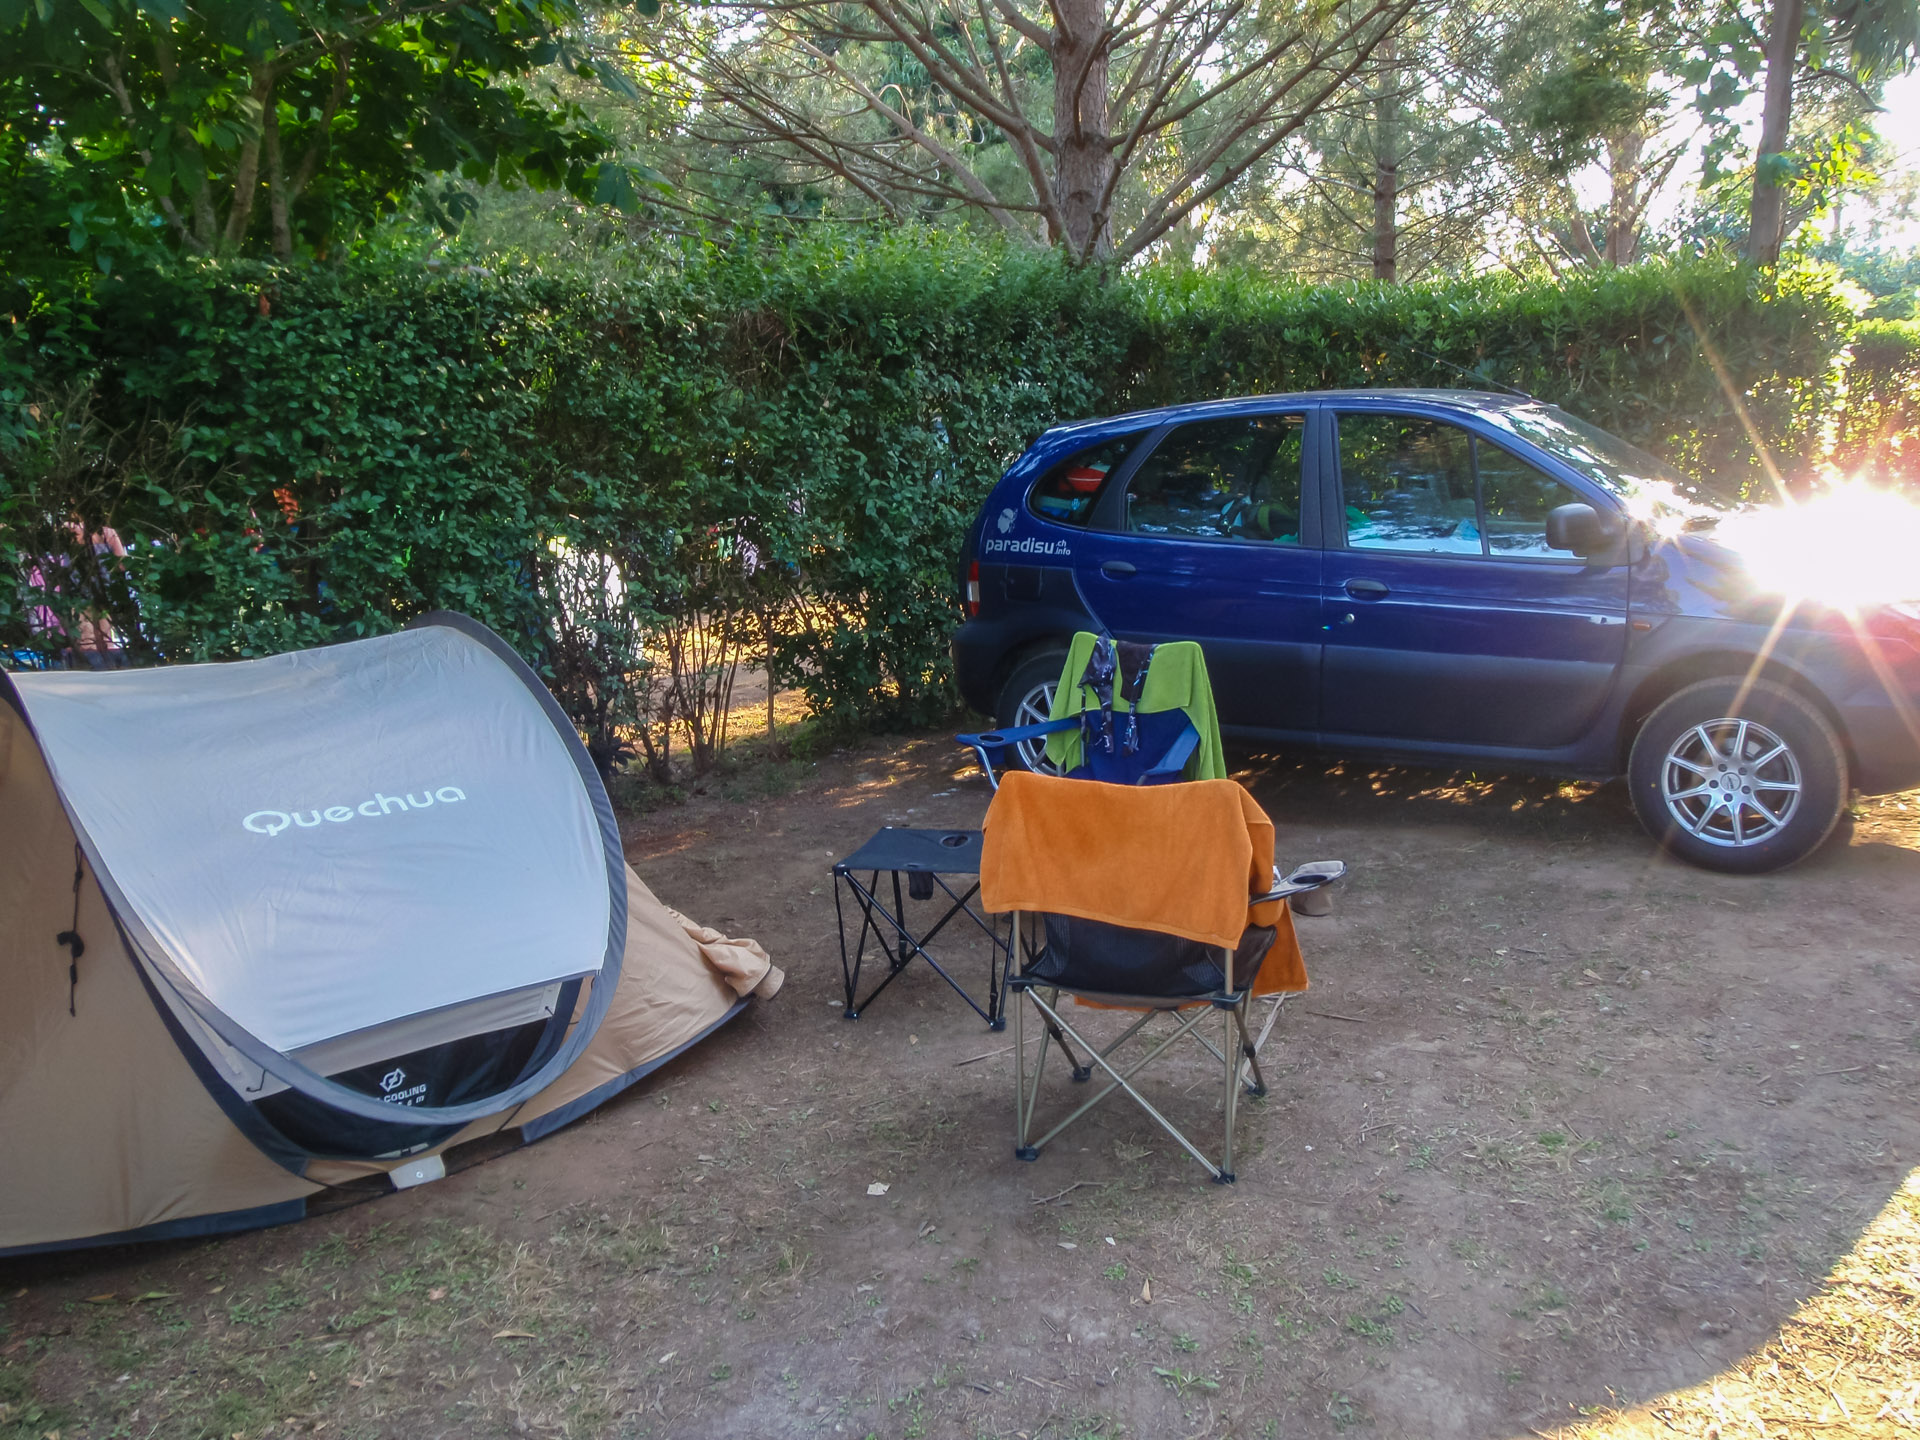 Camping La Pietra